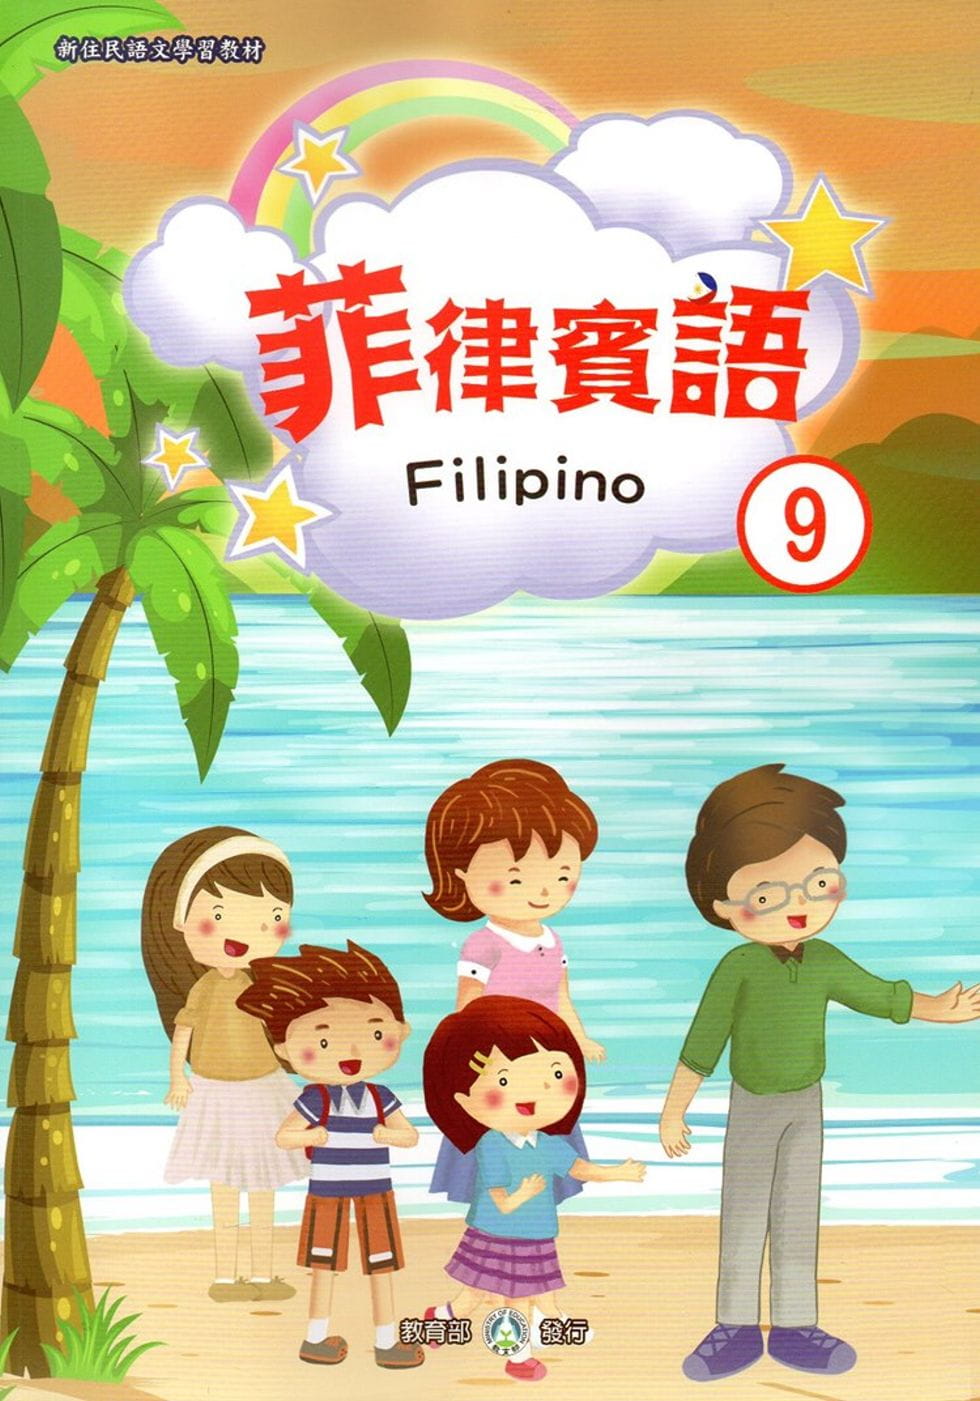 新住民語文學習教材菲律賓語第9冊